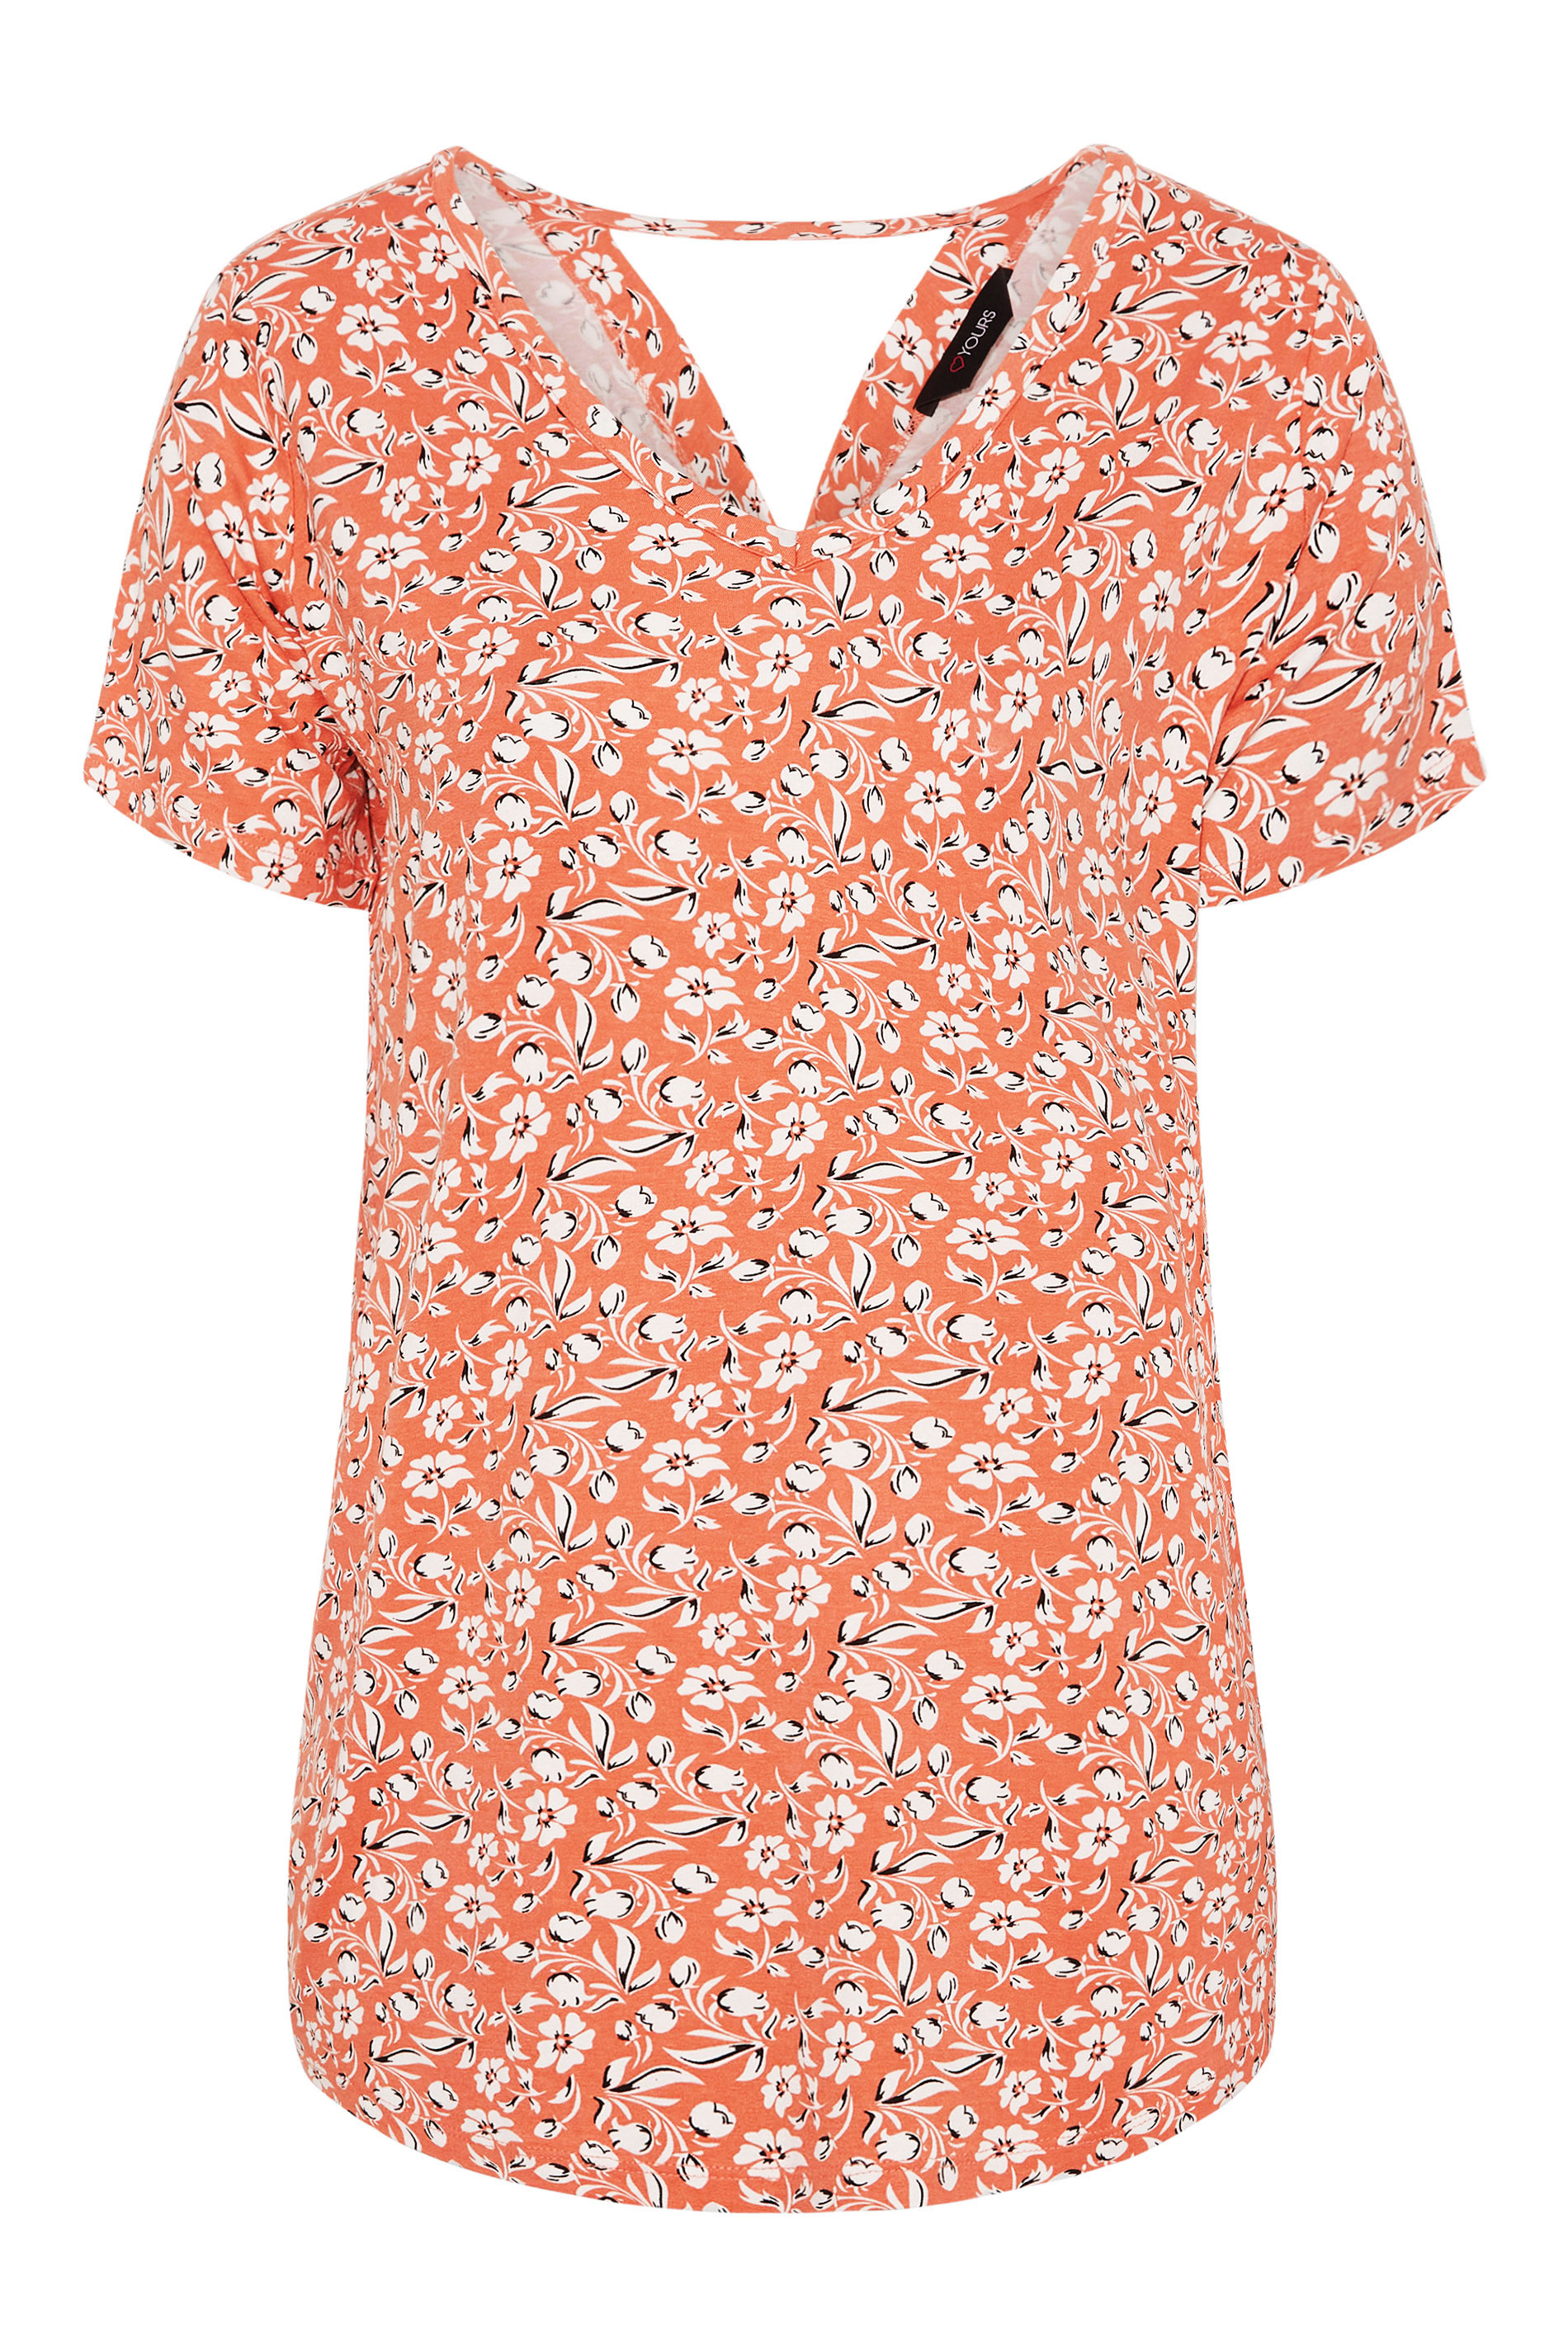 Grande taille  Tops Grande taille  Top à fleurs | T-Shirt Orange Floral Découpé au Dos - DJ37442